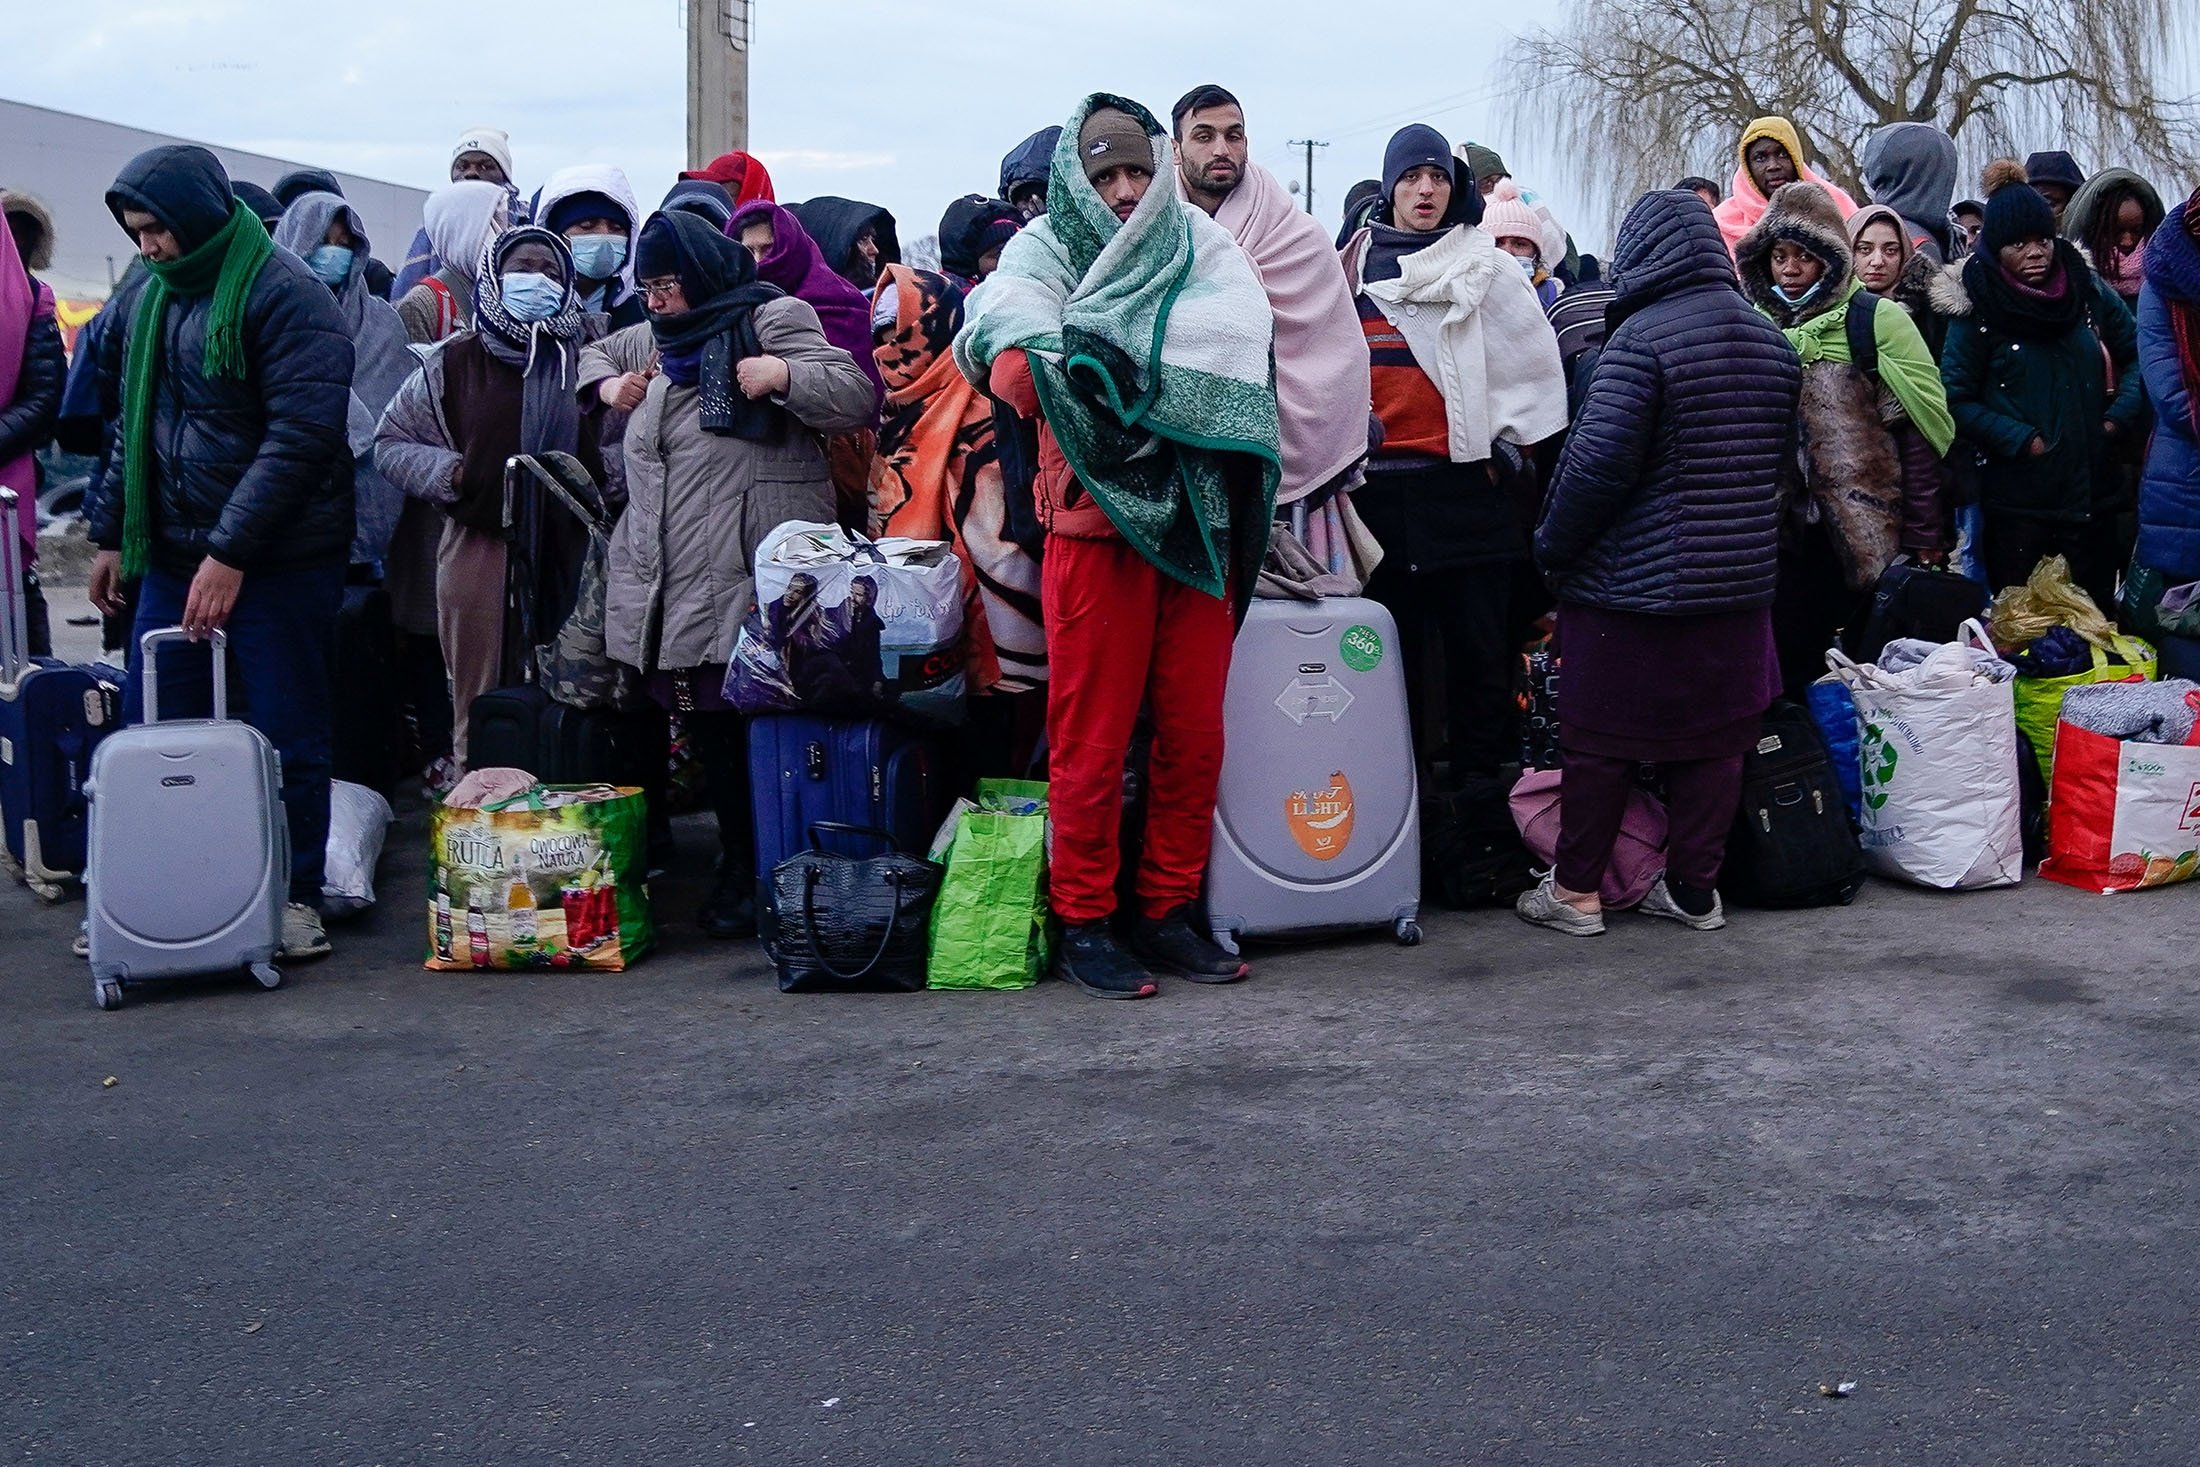 شركات كبرى تتعهّد بتوظيف آلاف اللاجئين في أوروبا